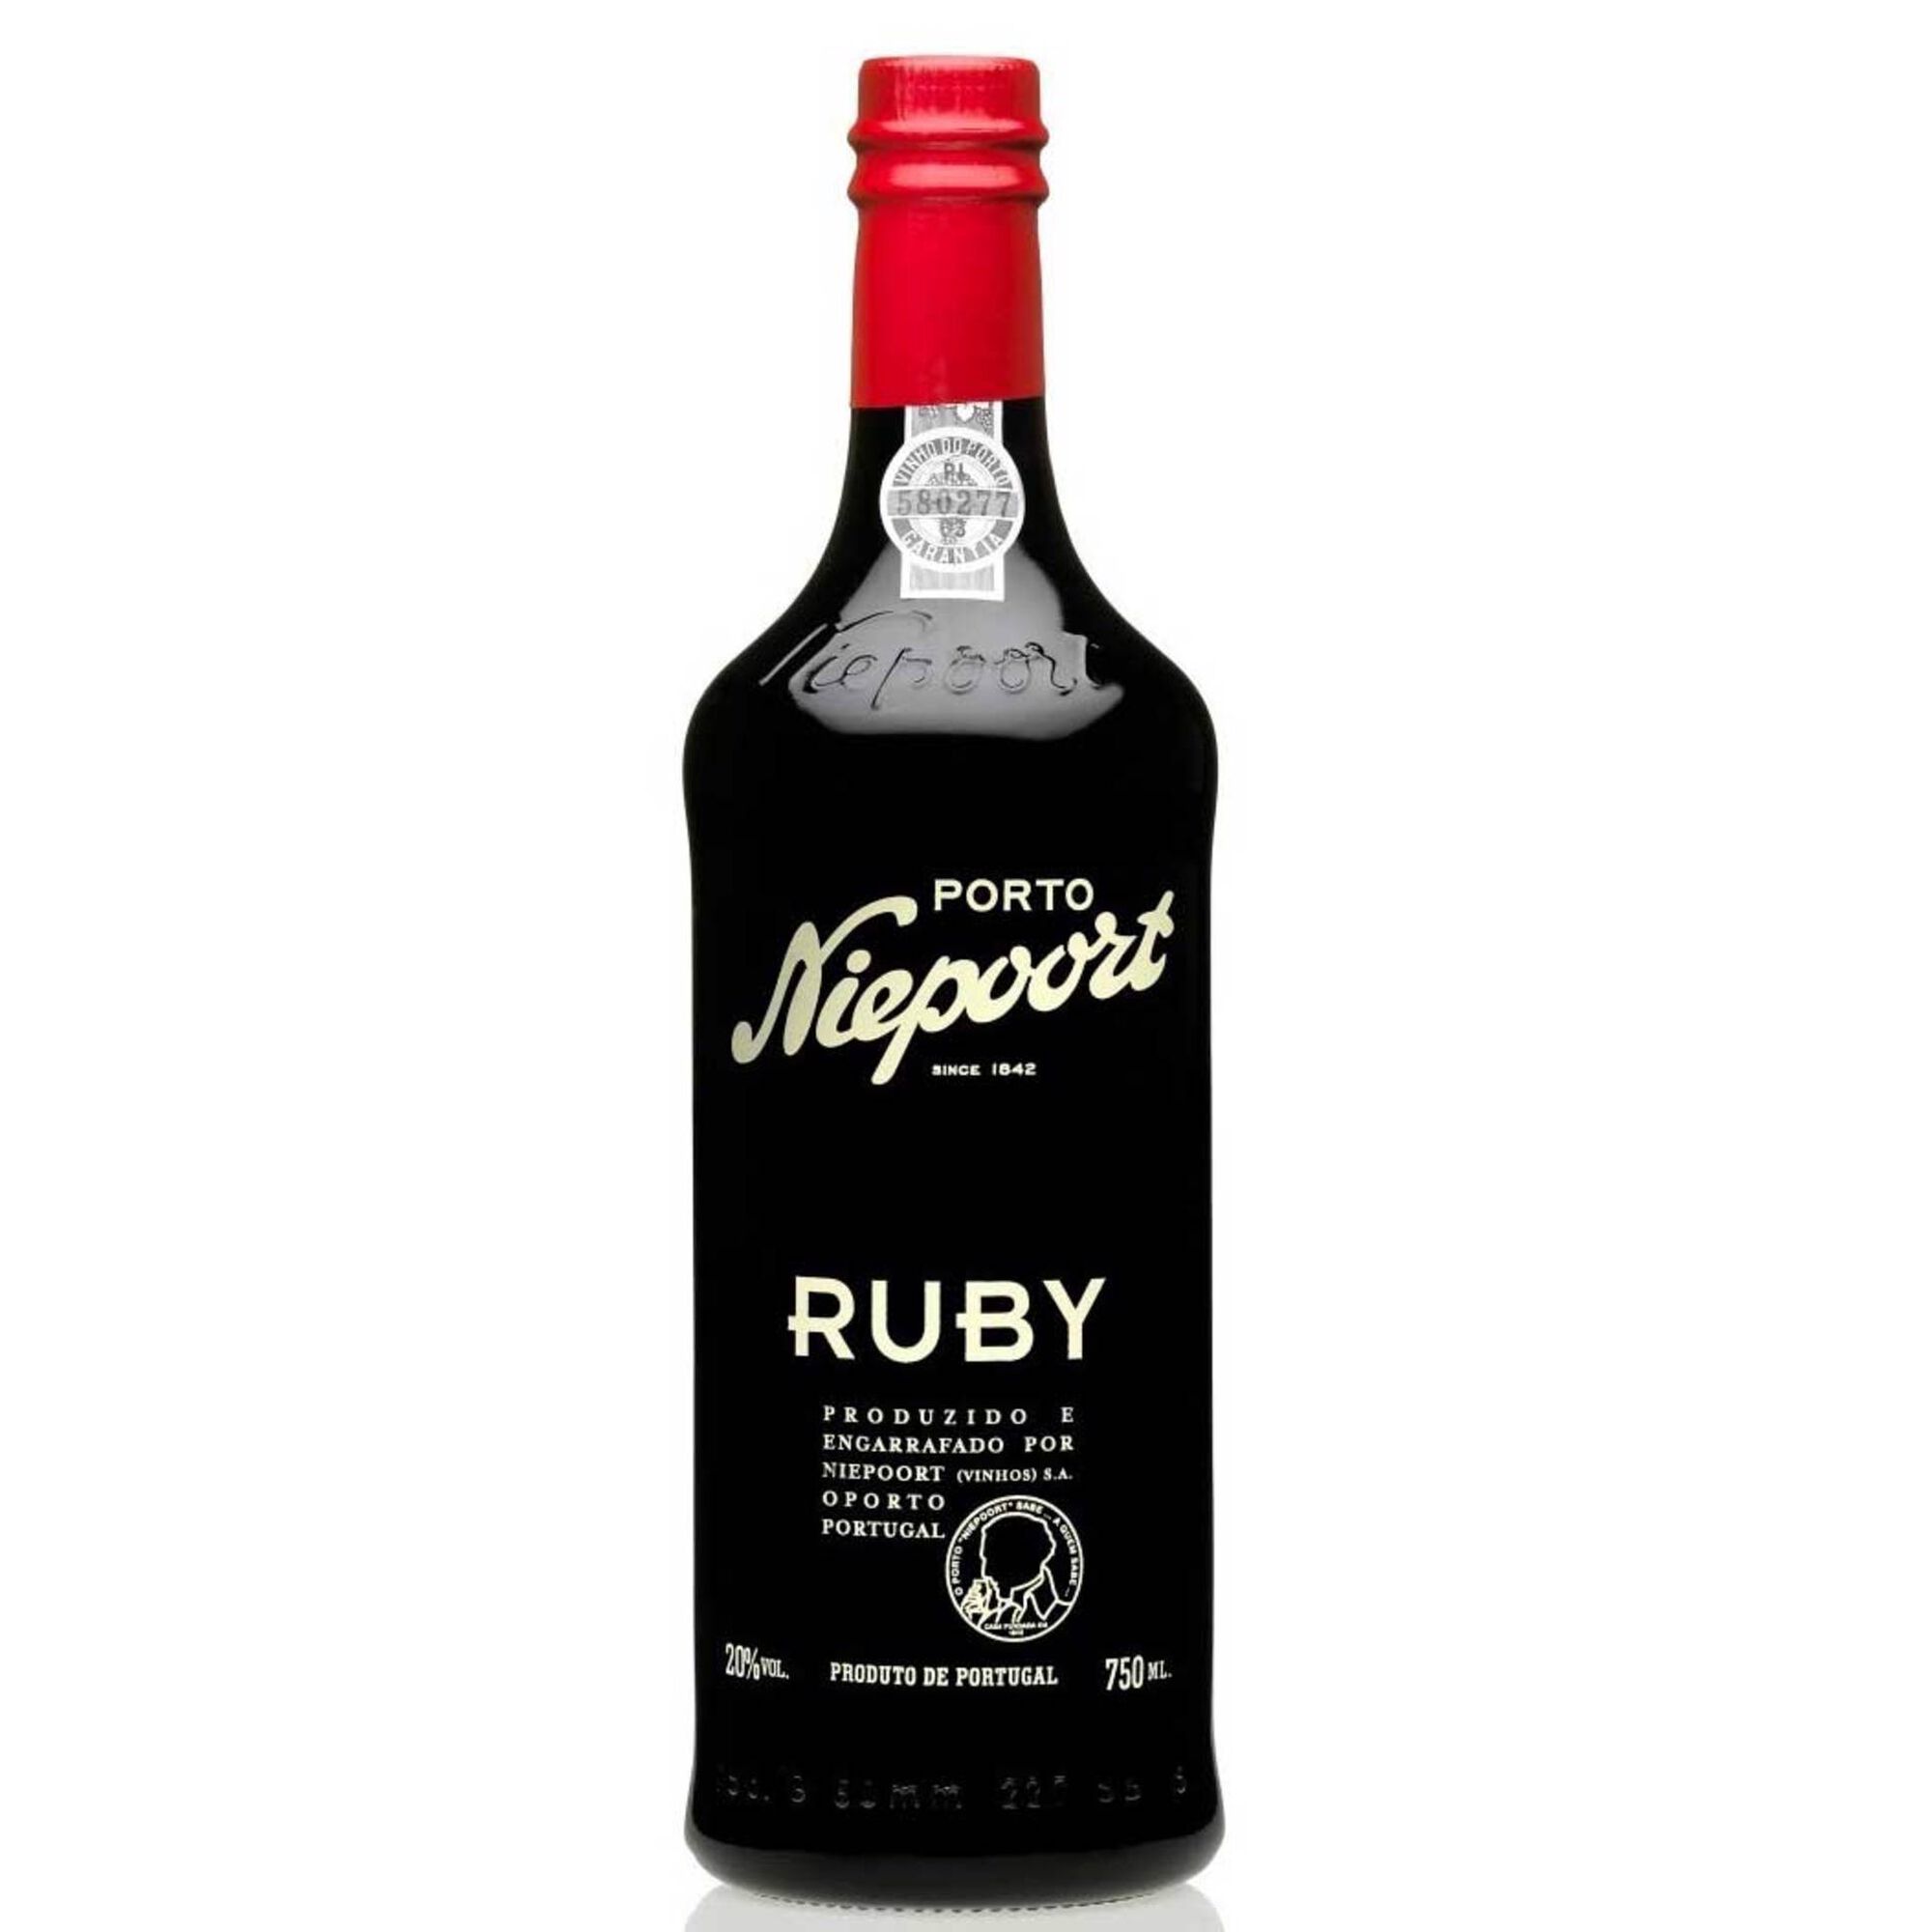 Niepoort Vinho do Porto Ruby